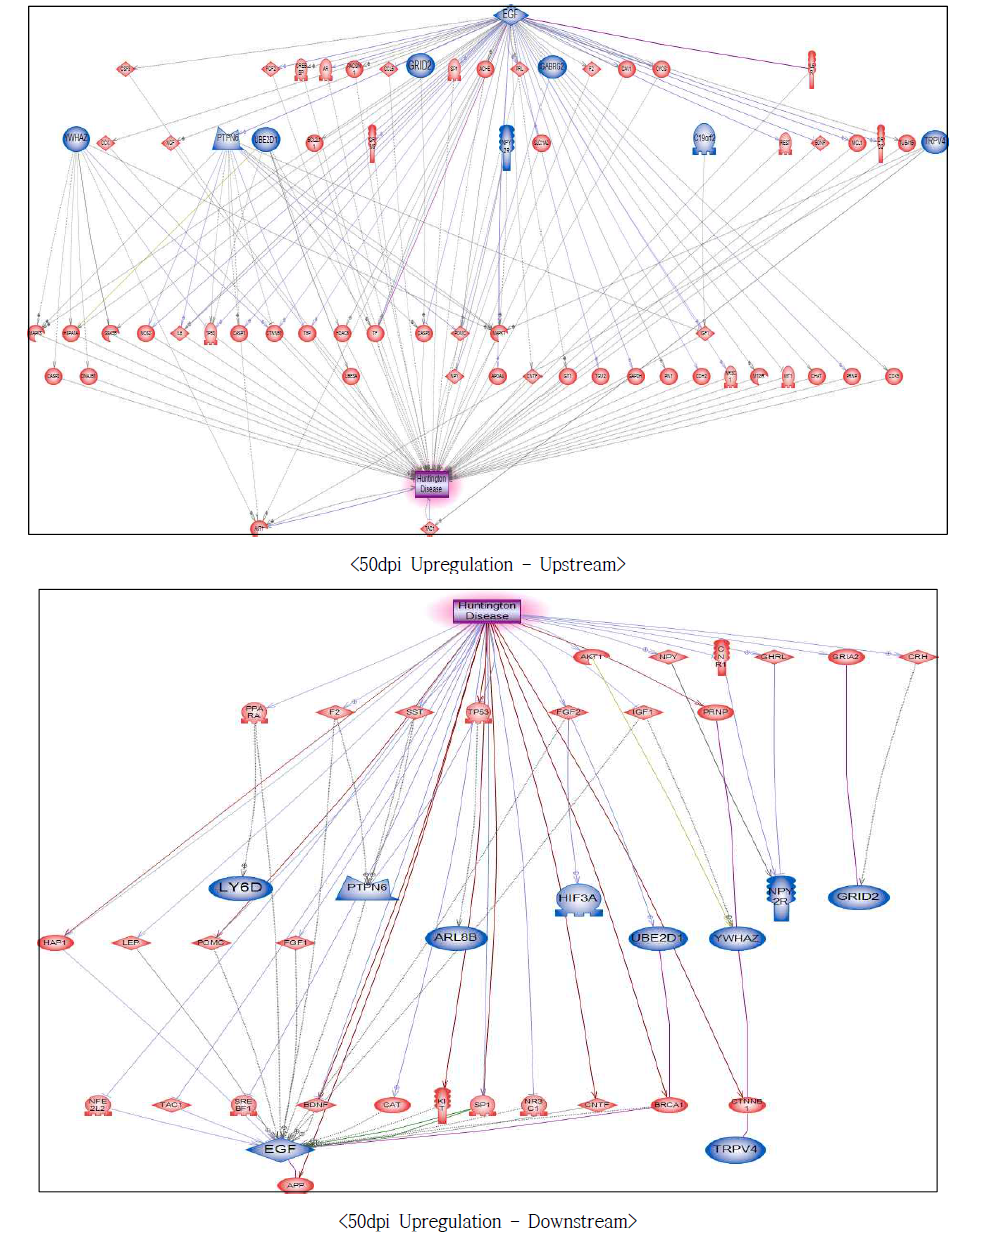 50dpi 과발현 유전자에서의 헌팅턴병에 대한 네트워크 구축